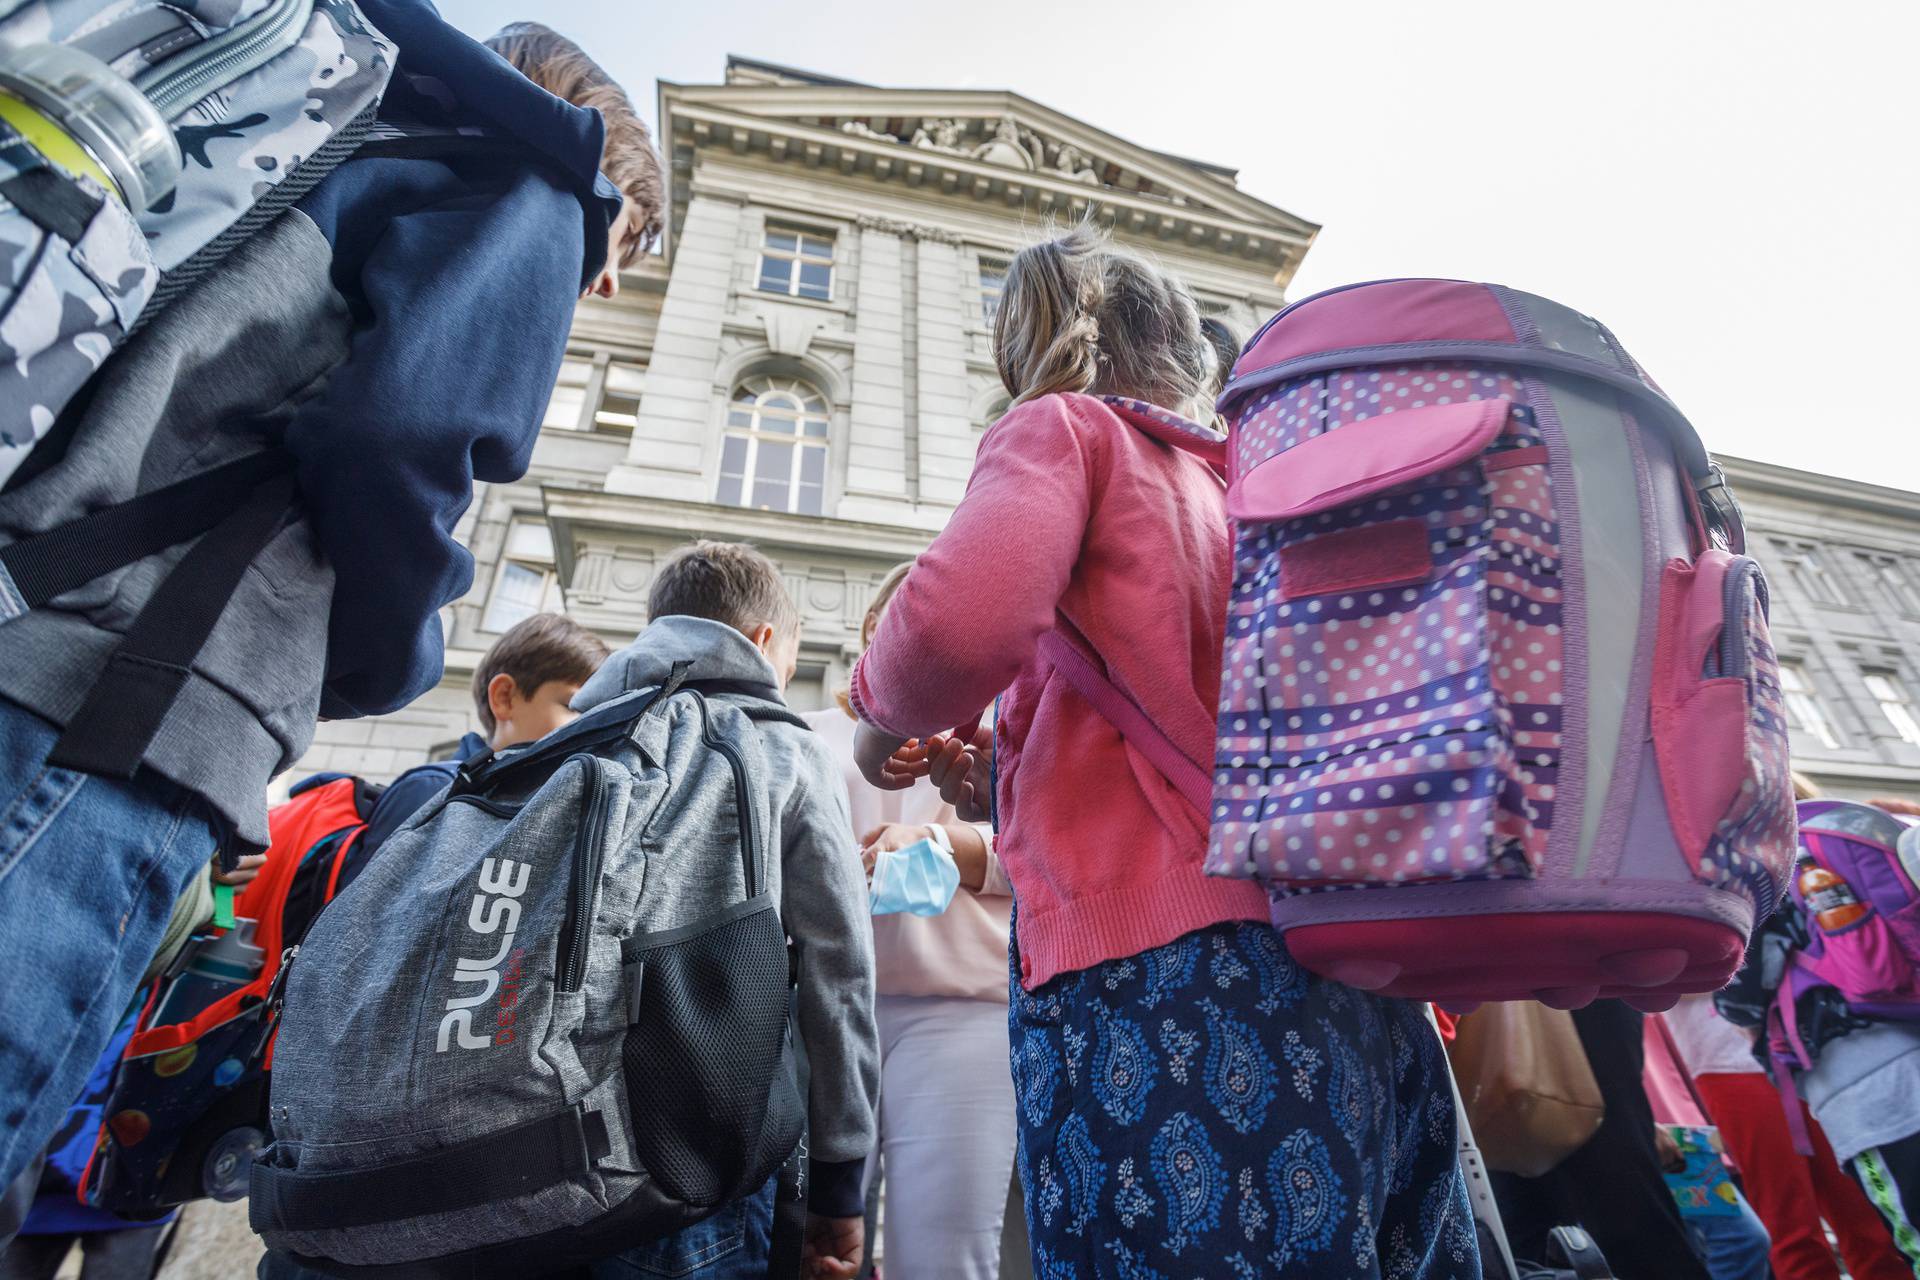 Srednjoškolci u Splitu: Mjere su u redu, ali nećemo se cijepiti. U Rijeci su cijepili 58 posto osoblja